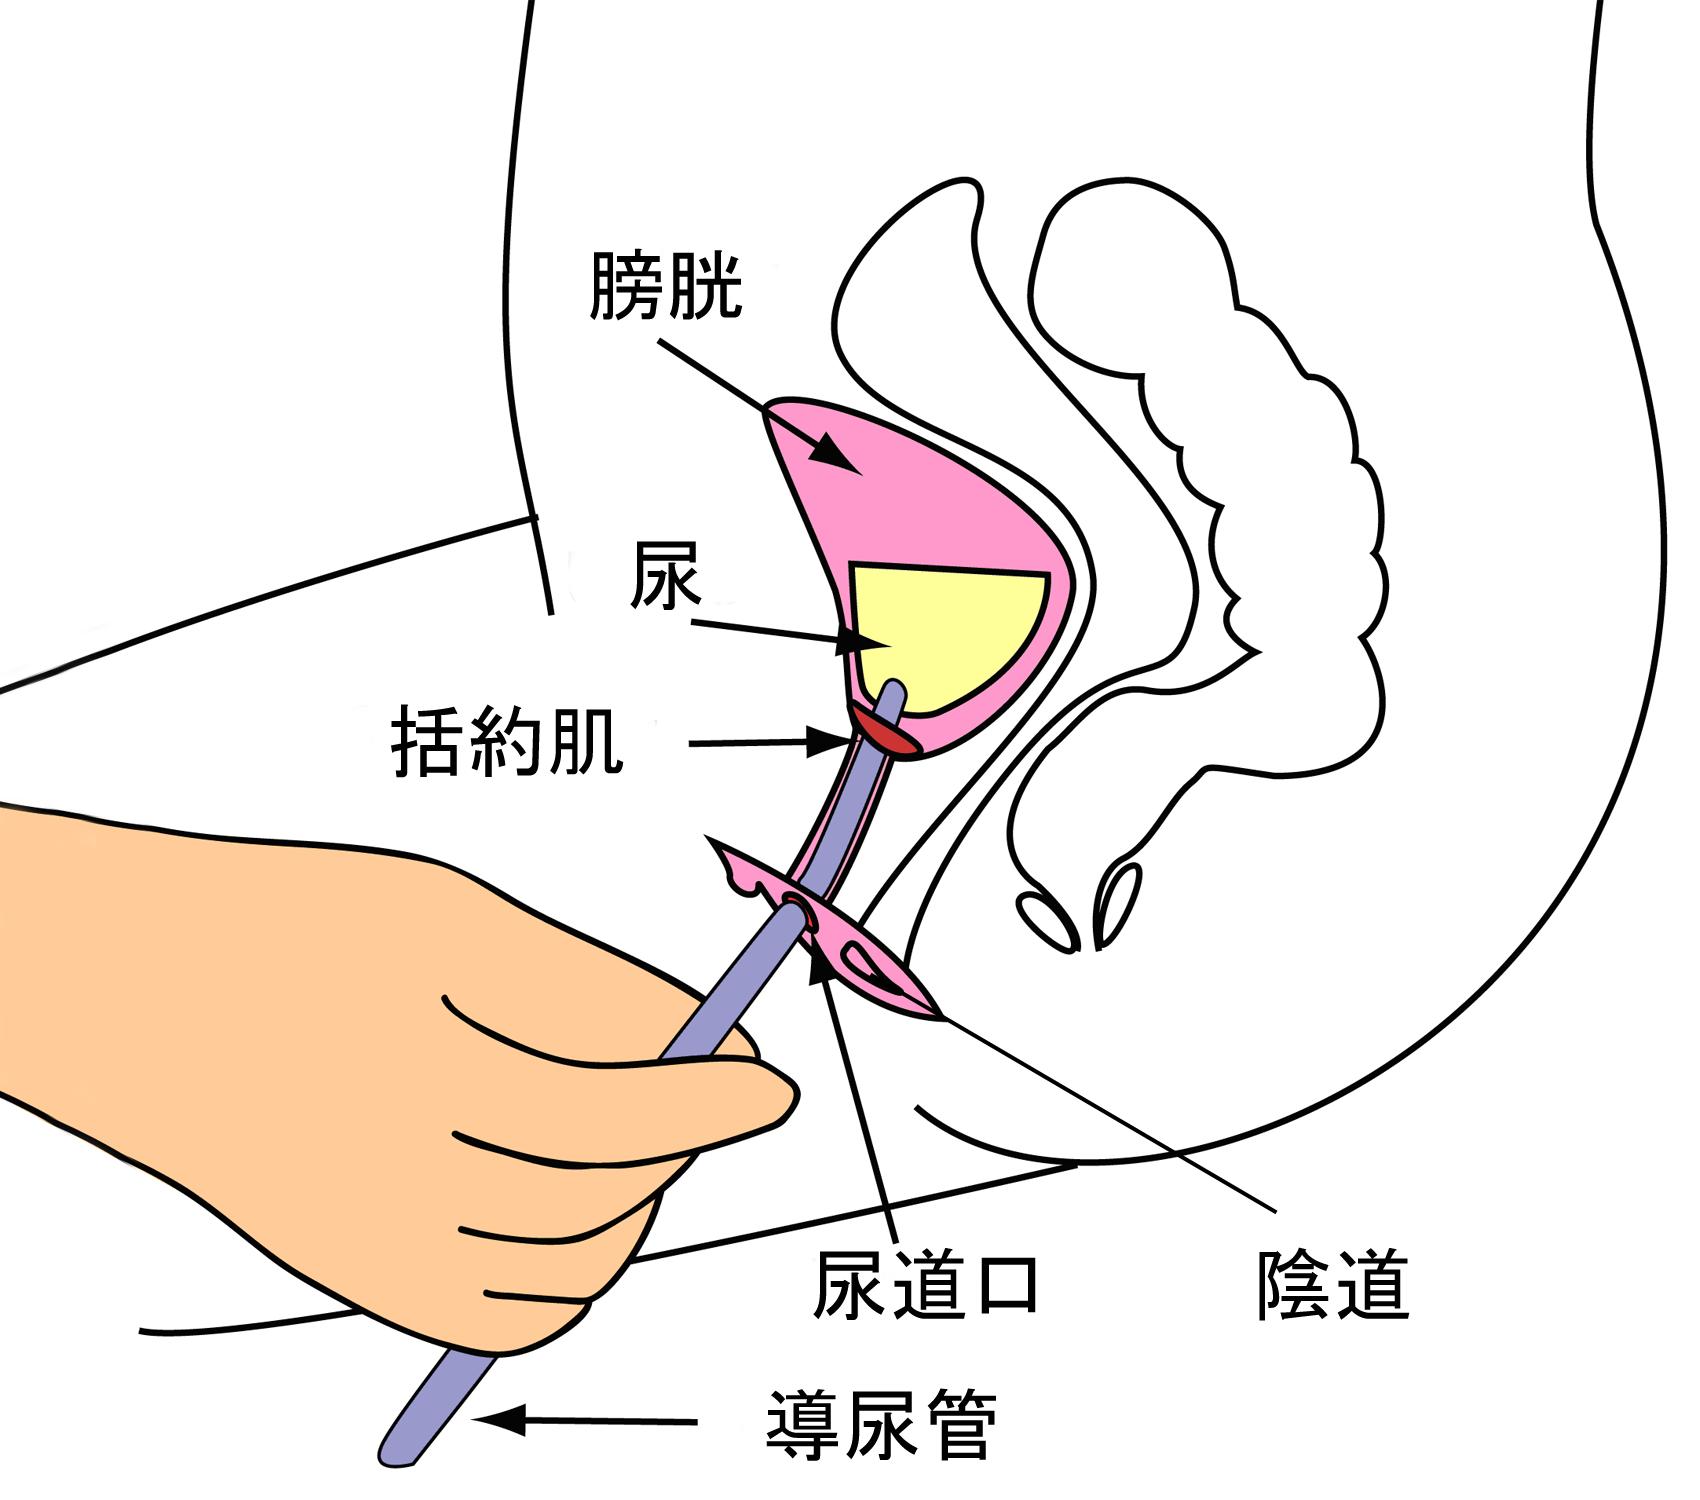 女患者导尿术流程图片